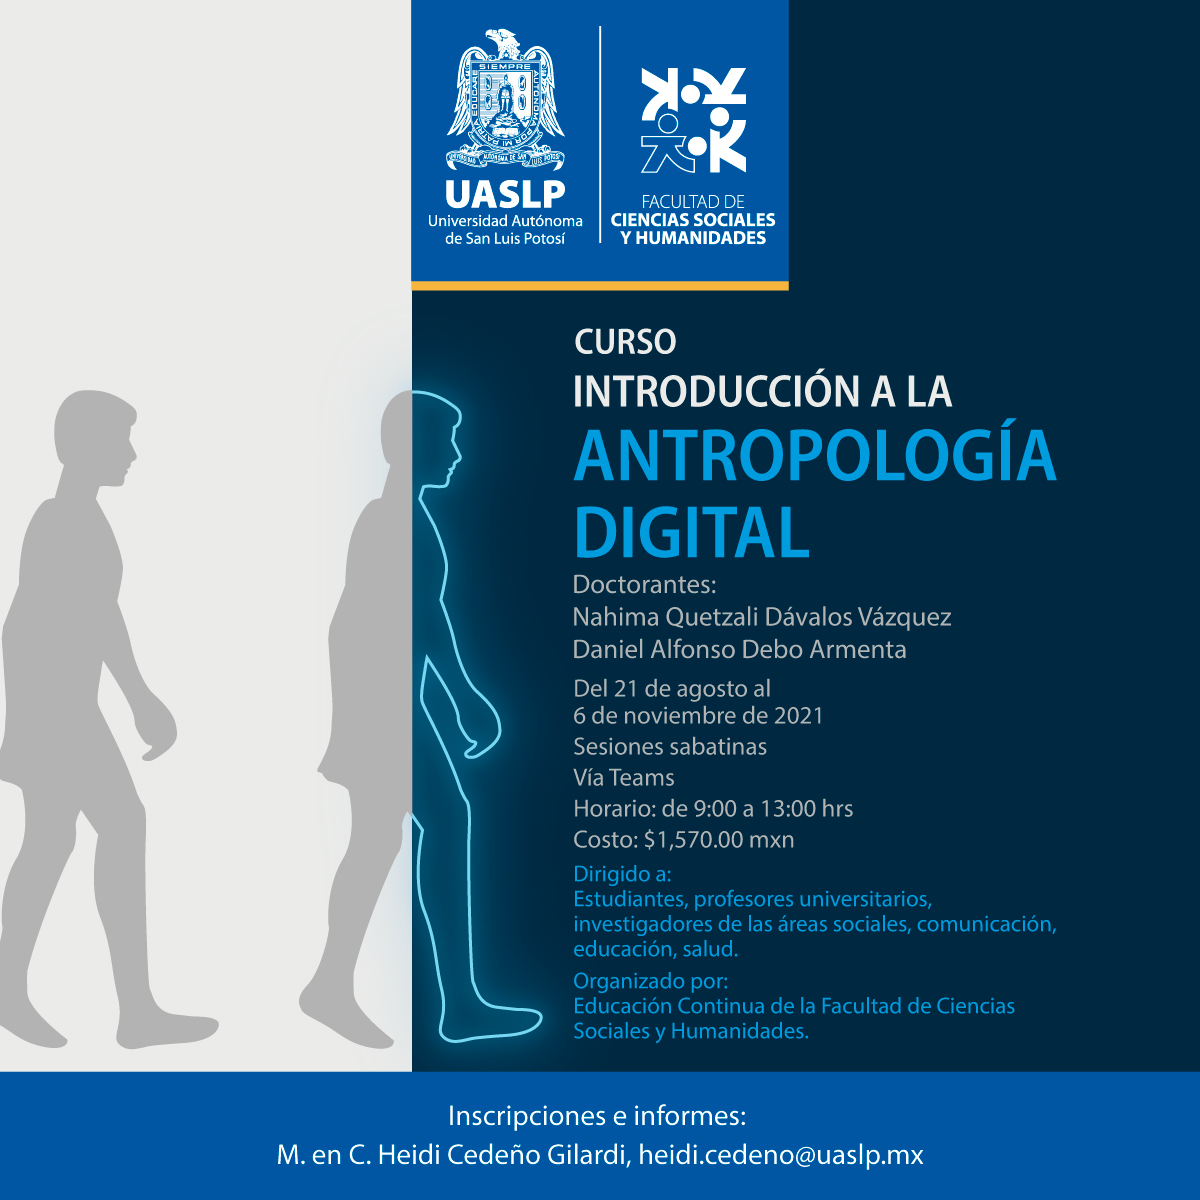 Del 21 de agosto al 06 de noviembre de 2021, se llevará a cabo el curso “Introducción a la Antropología Digital”.